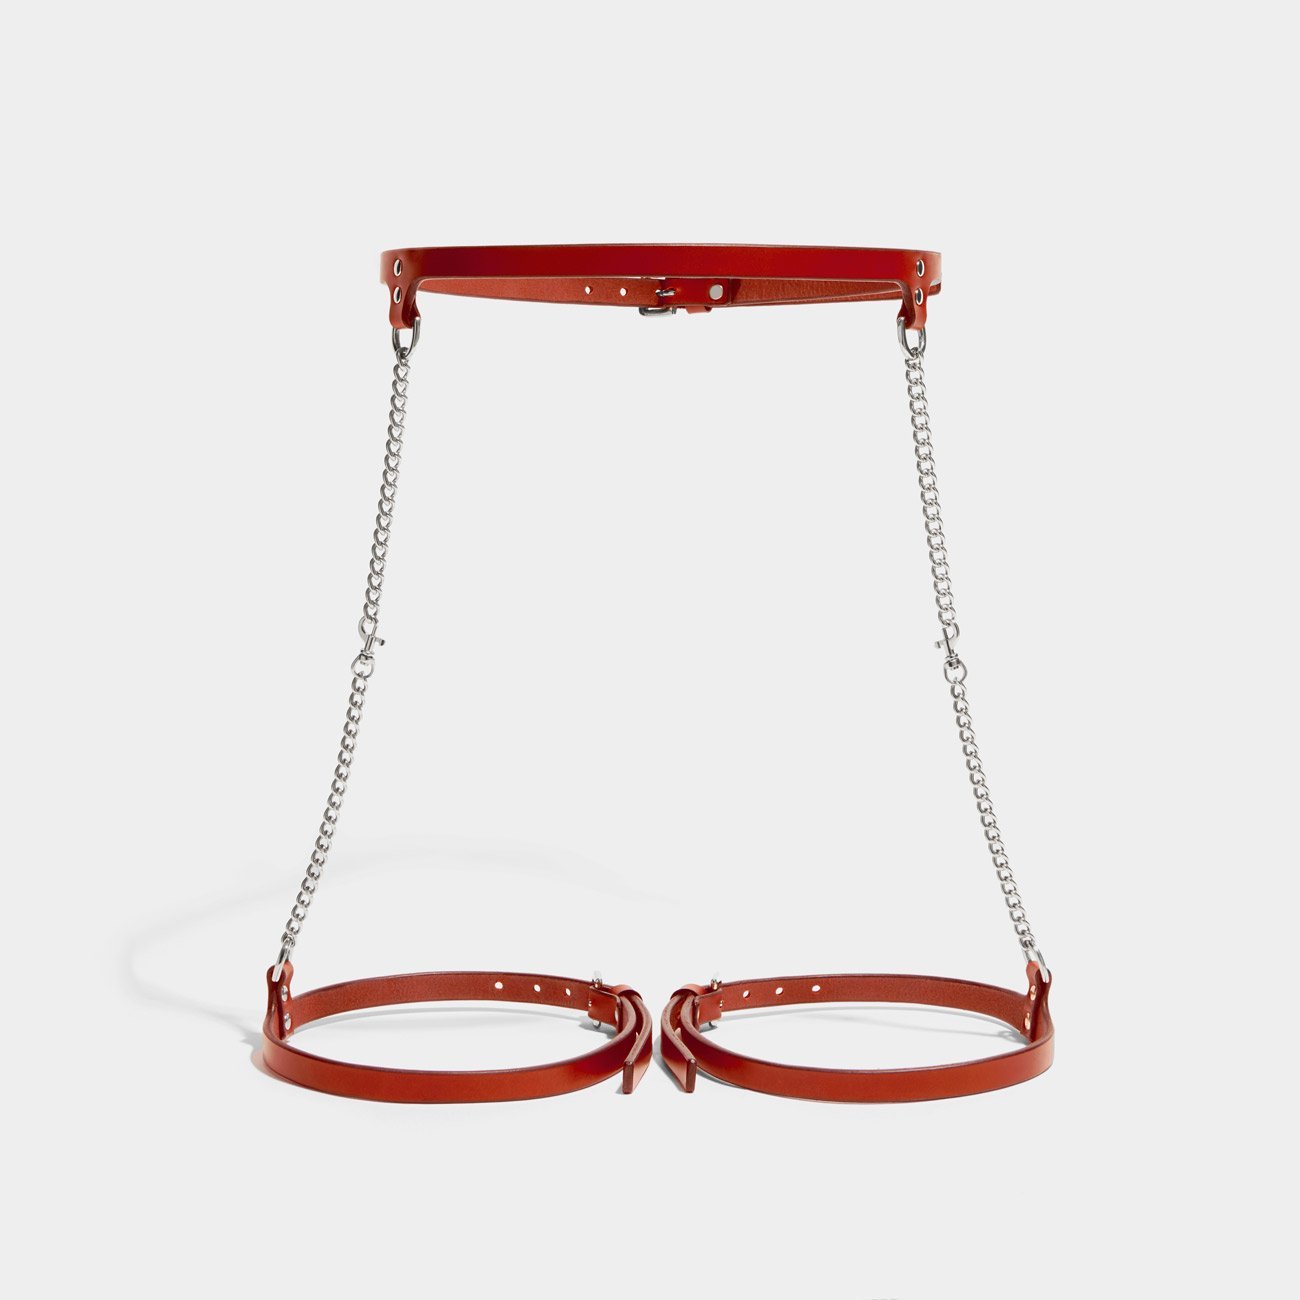 slim chain suspender harness red fleet ilya